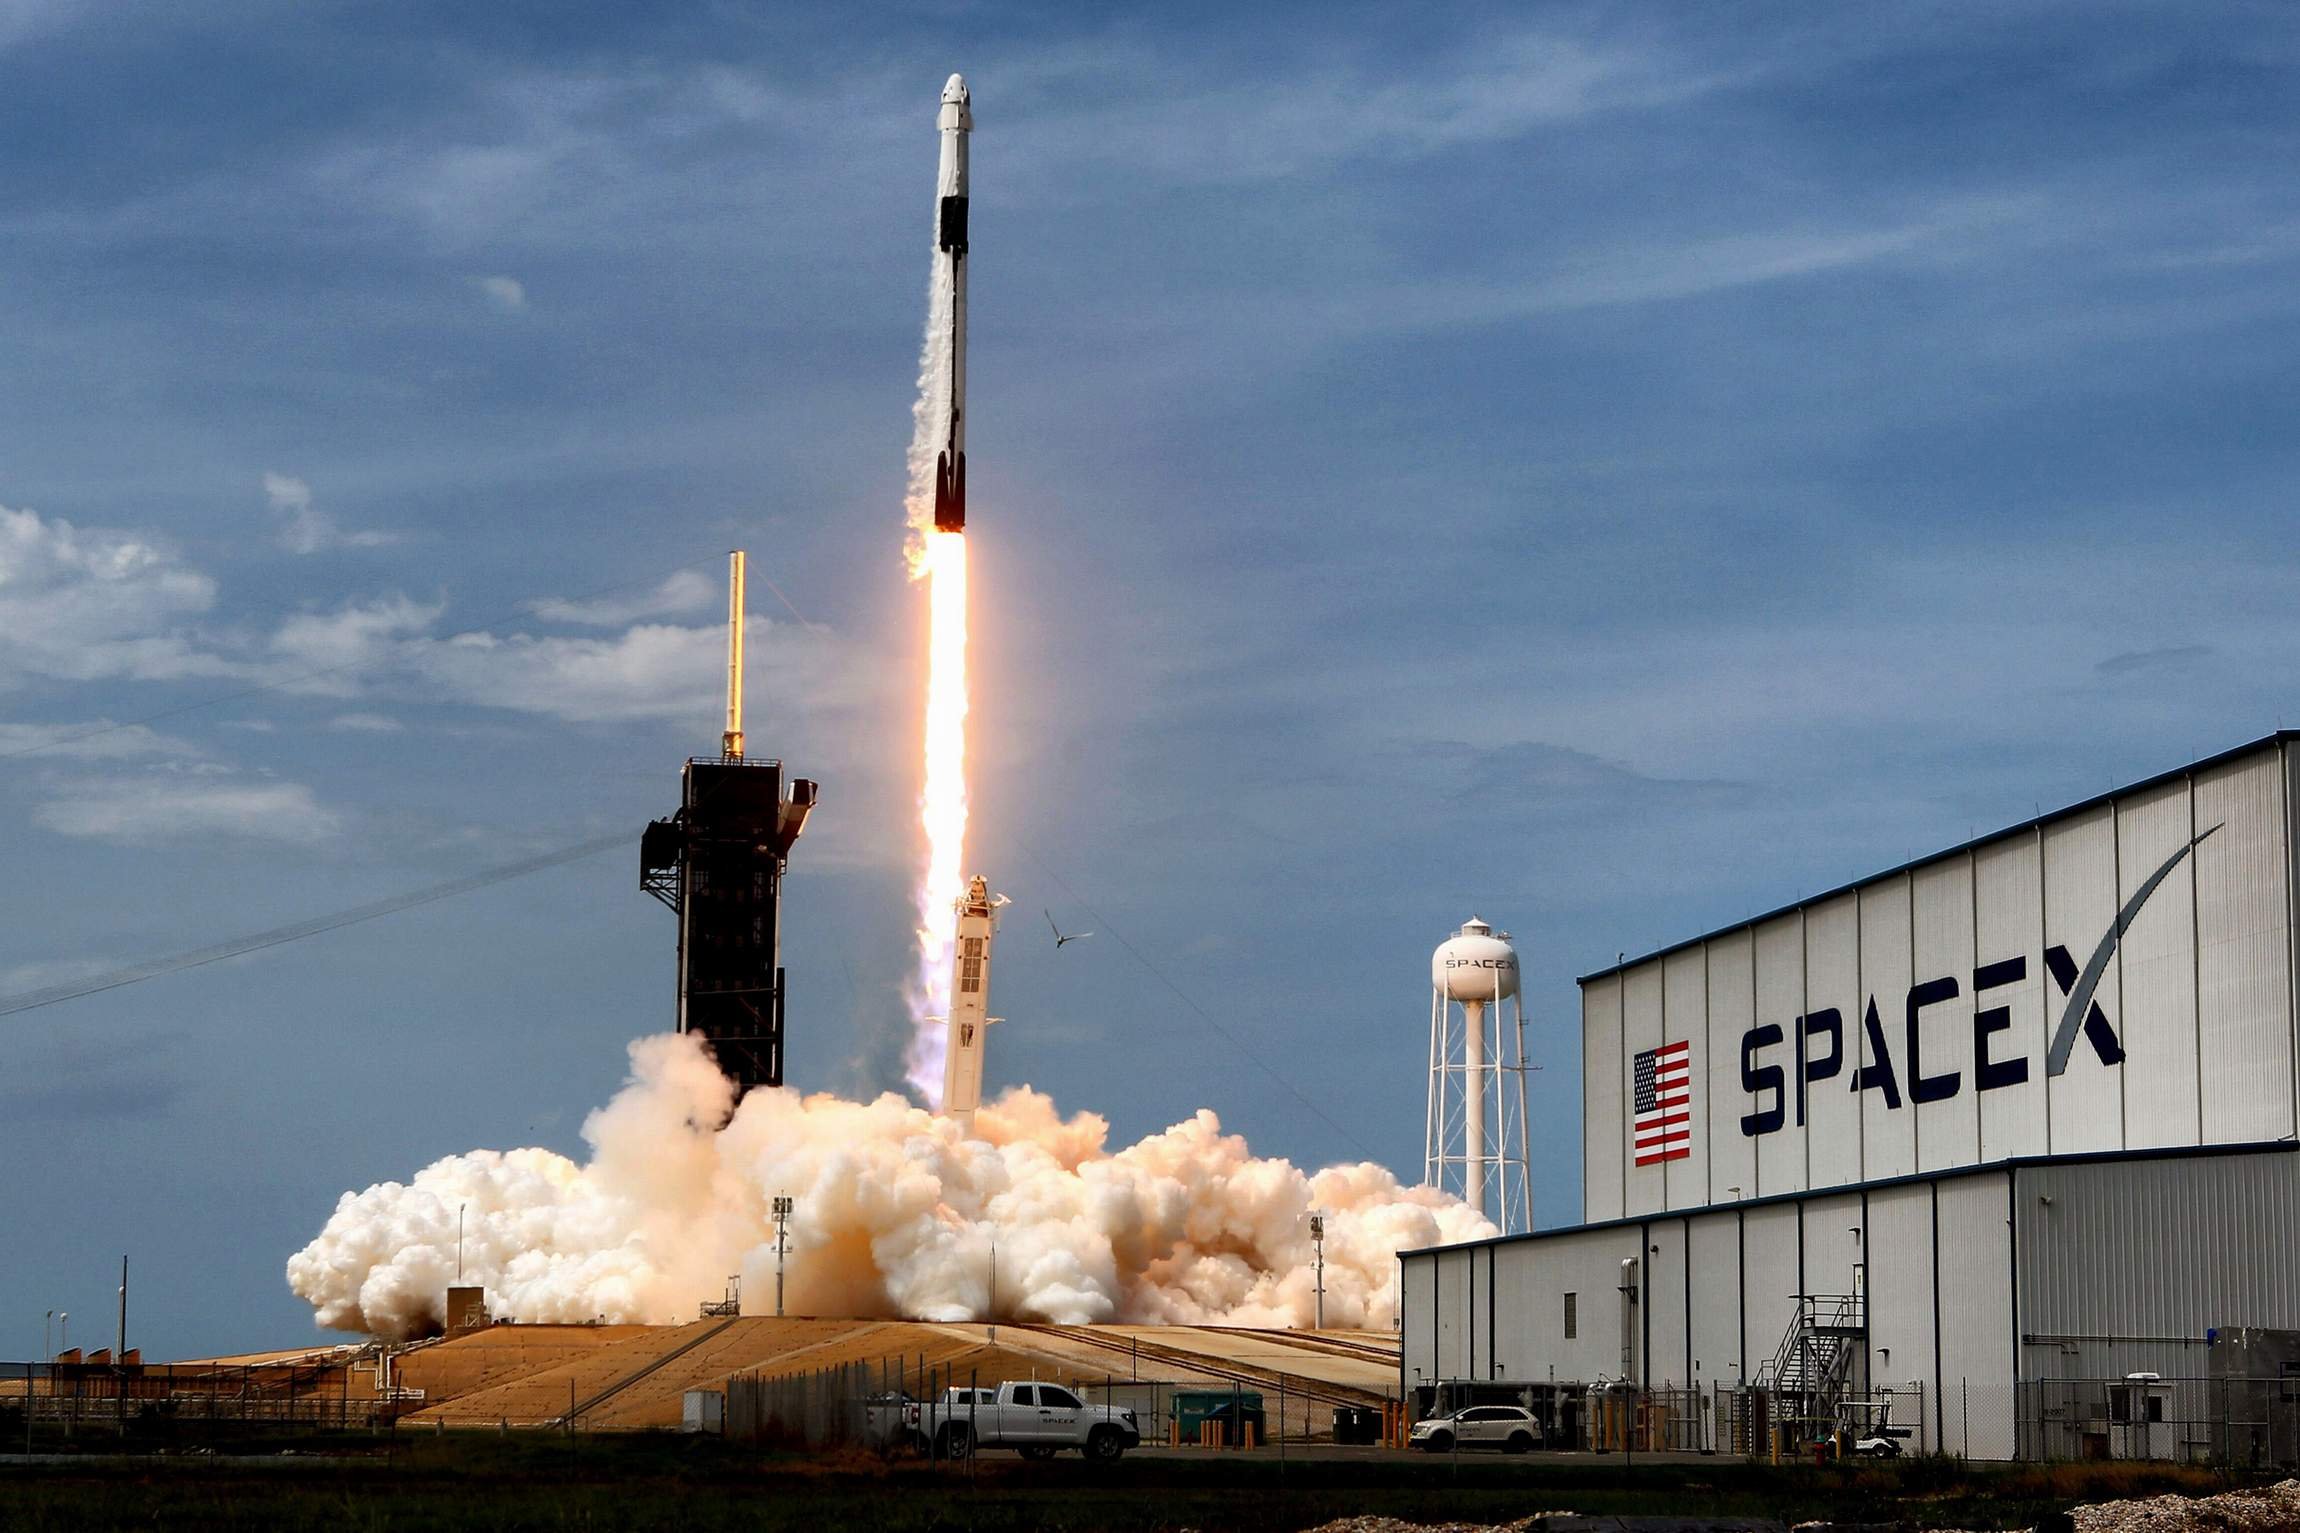  SpaceX, compania lui Elon Musk,  a lansat o nouă rundă de finanţare. Compania este evaluată la 127 de miliarde de dolari